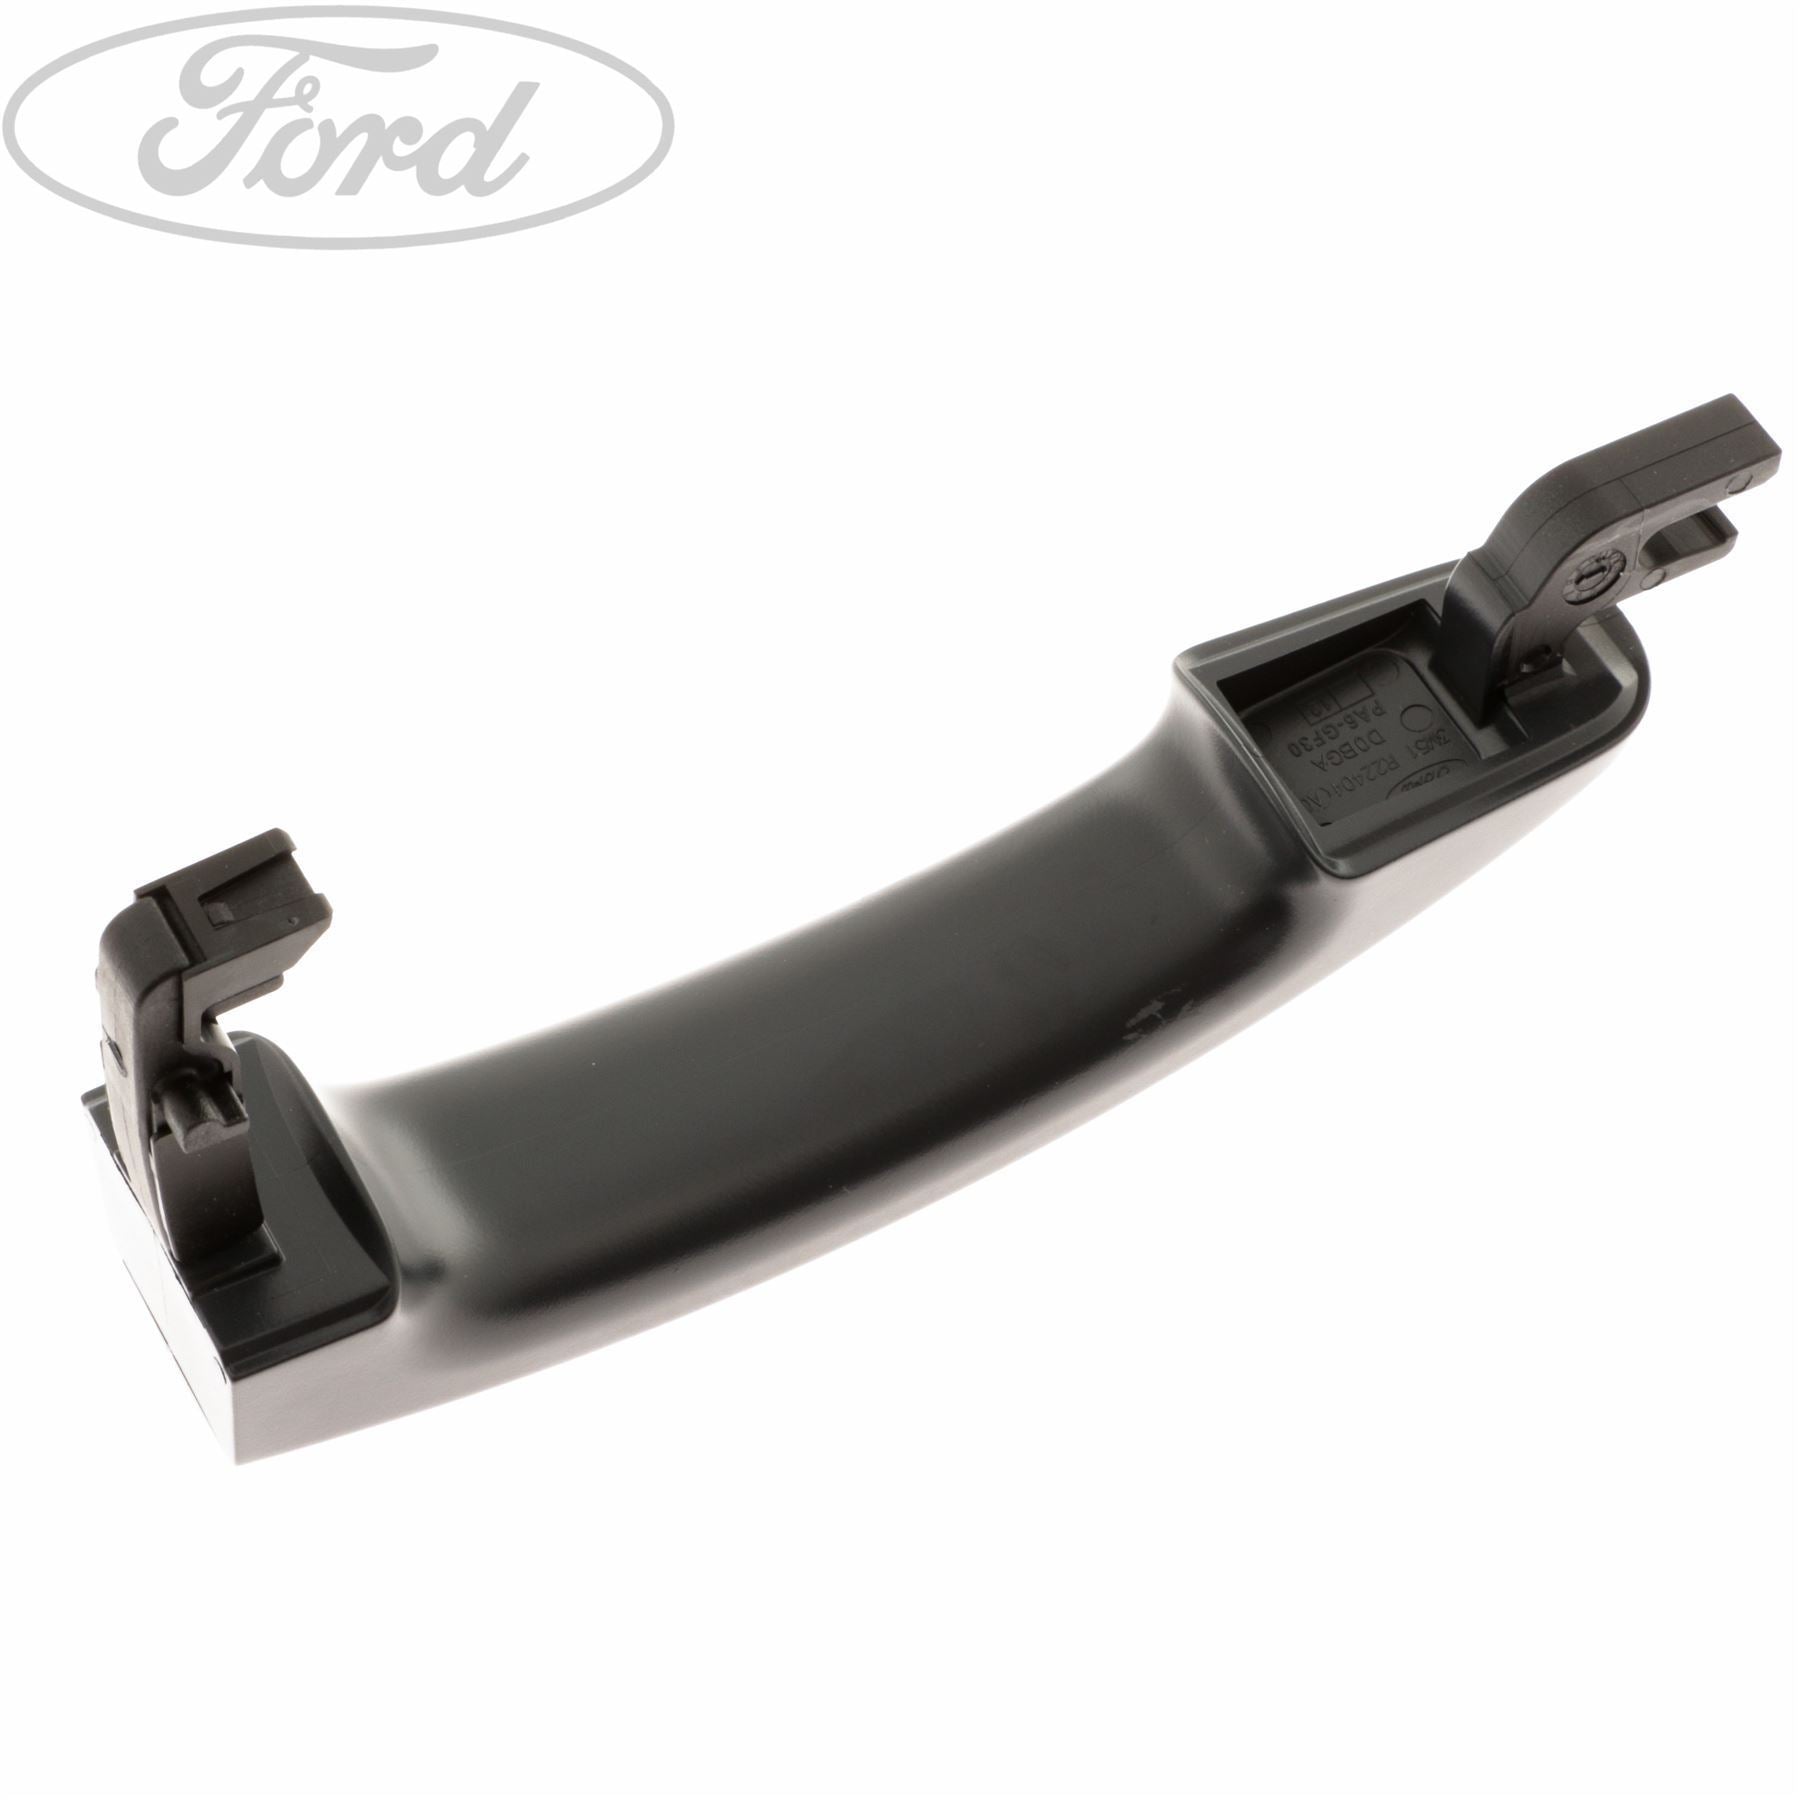 Ford Focus - Türgriff verkratzt - Kosten? (Auto, Auto und Motorrad